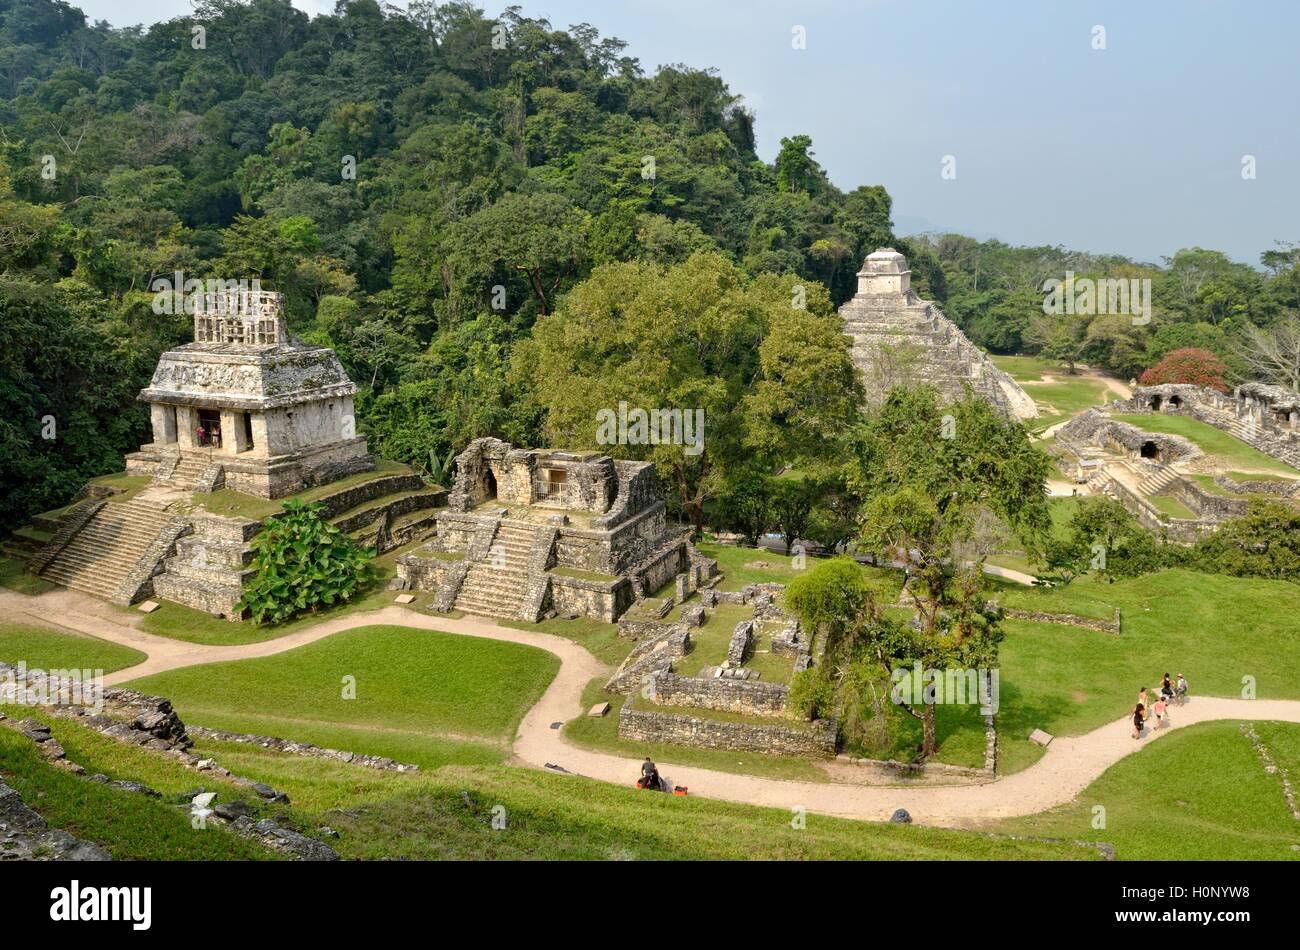 View with Temple Templo del Sol, Templo XIV and XV Templo, Templo de las Inscriptiones and El Palacio, Mayan ruins of Palenque Stock Photo